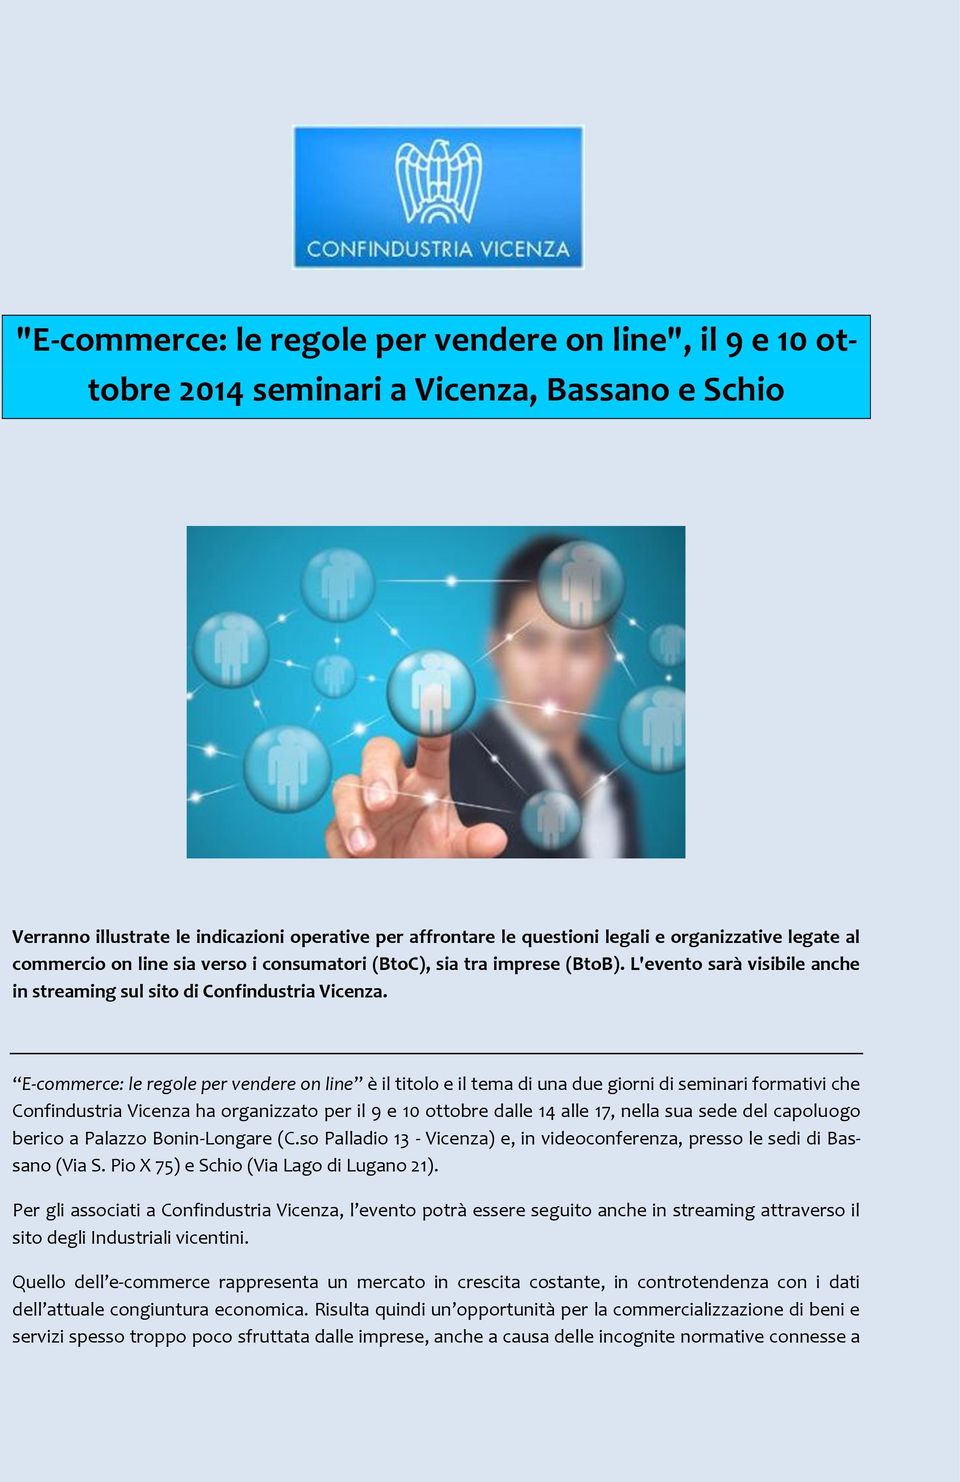 E-commerce: le regole per vendere on line è il titolo e il tema di una due giorni di seminari formativi che Confindustria Vicenza ha organizzato per il 9 e 10 ottobre dalle 14 alle 17, nella sua sede